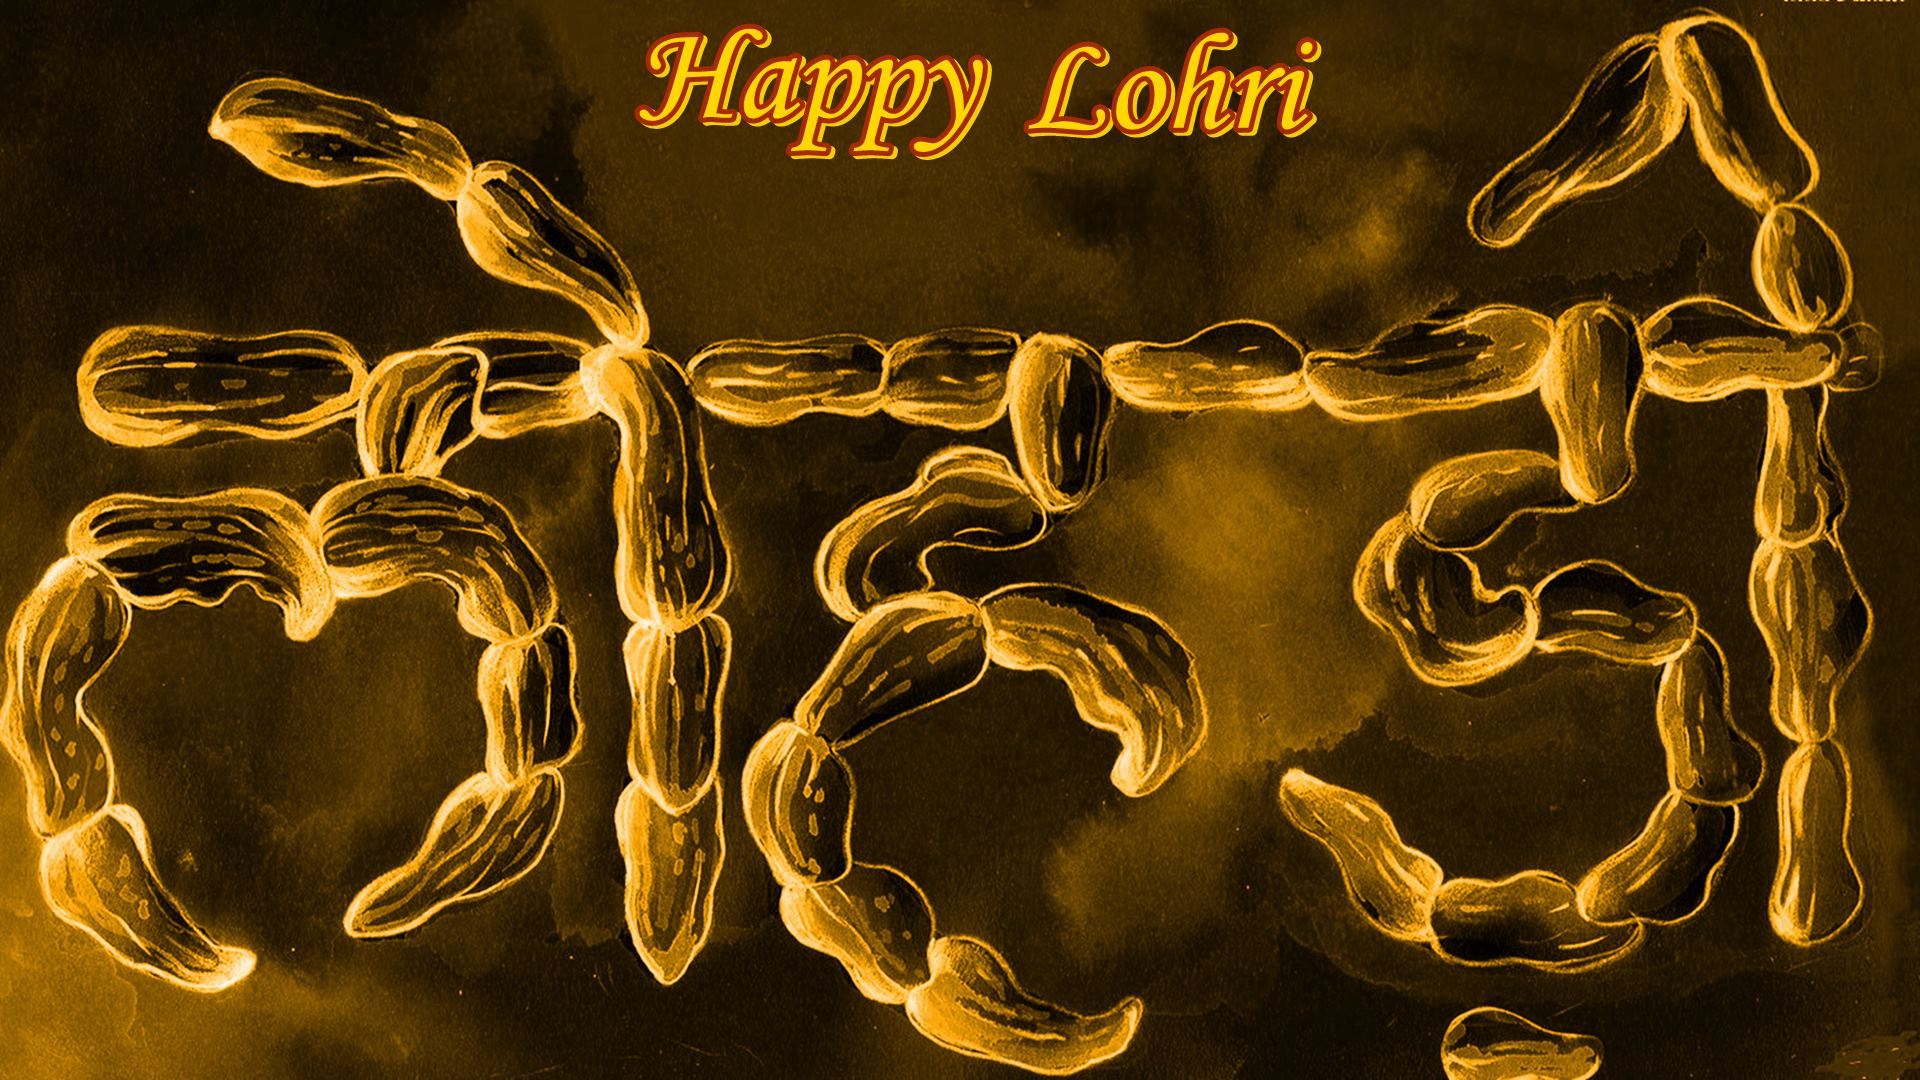 Happy Lohri Images - Hd Wallpaper Happy Lohri , HD Wallpaper & Backgrounds